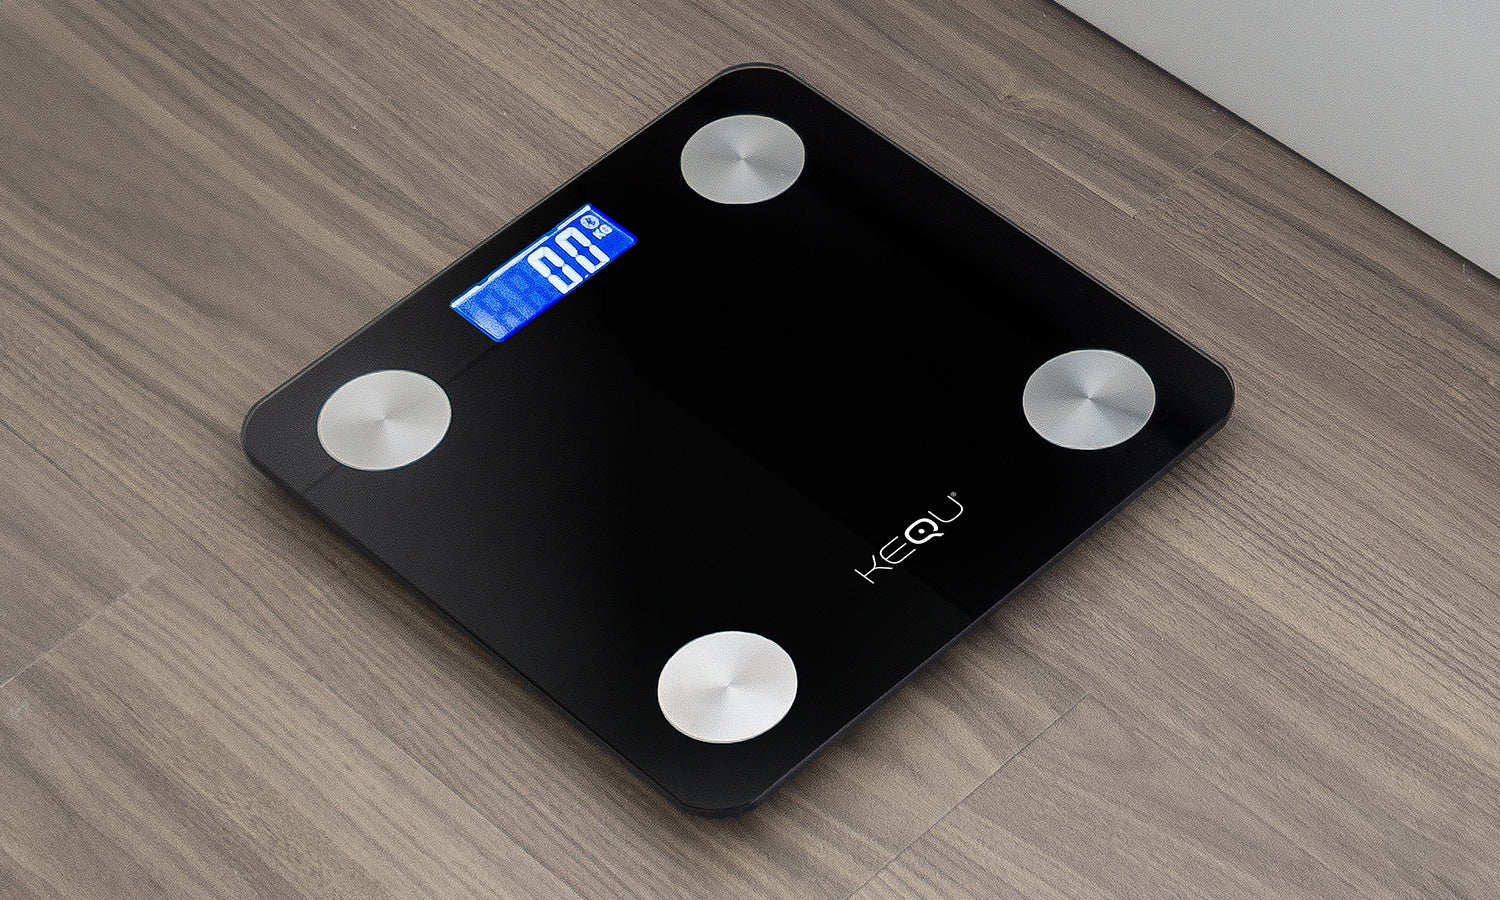 Kequ BMI Scale V2